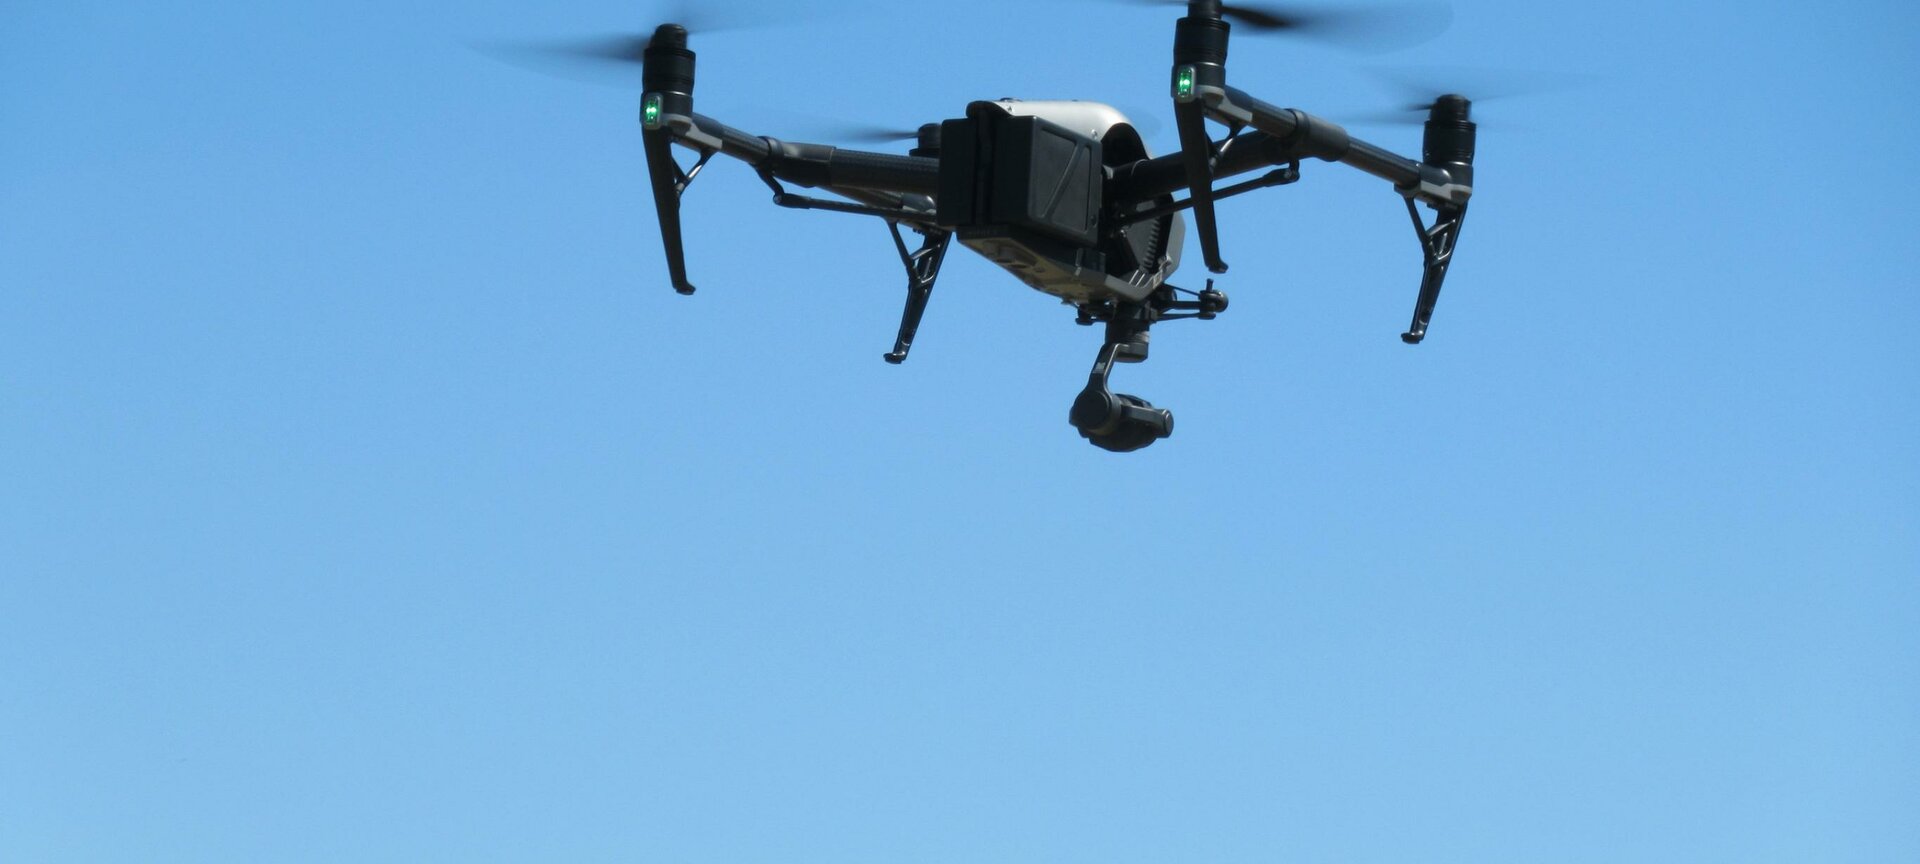 Vlieg met professionele drones - Beleef het zelf!